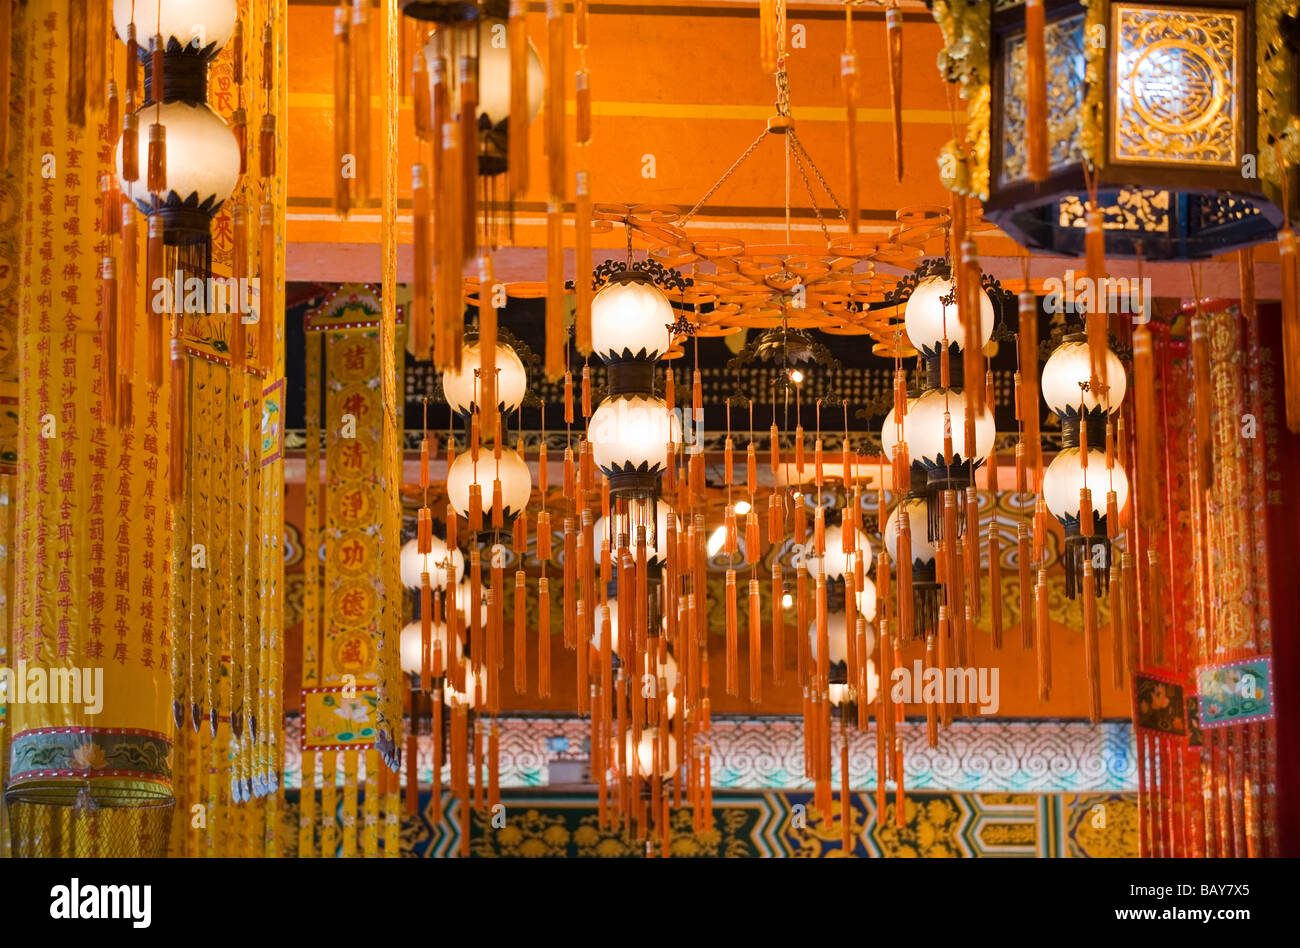 Lanternes chinoises colorées suspendues au plafond à l'intérieur de la salle du grand héros au monastère Po Lin. Banque D'Images